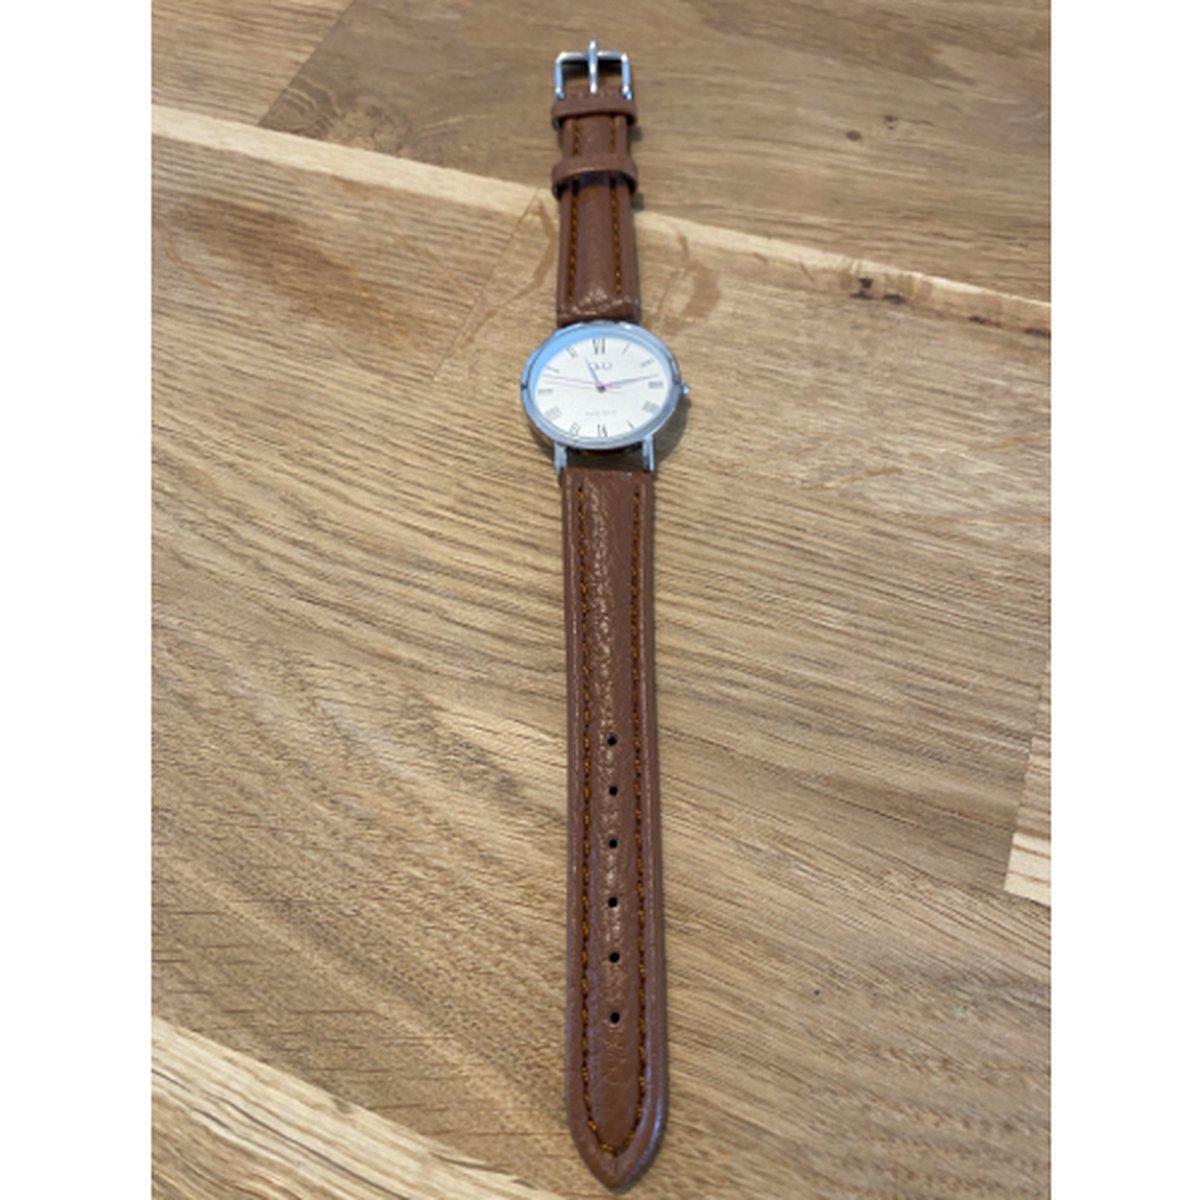 Horlogeband-dames-heren-16 mm-lichtbruin-cognac kleurig-juweliers kwaliteit-anti allergisch